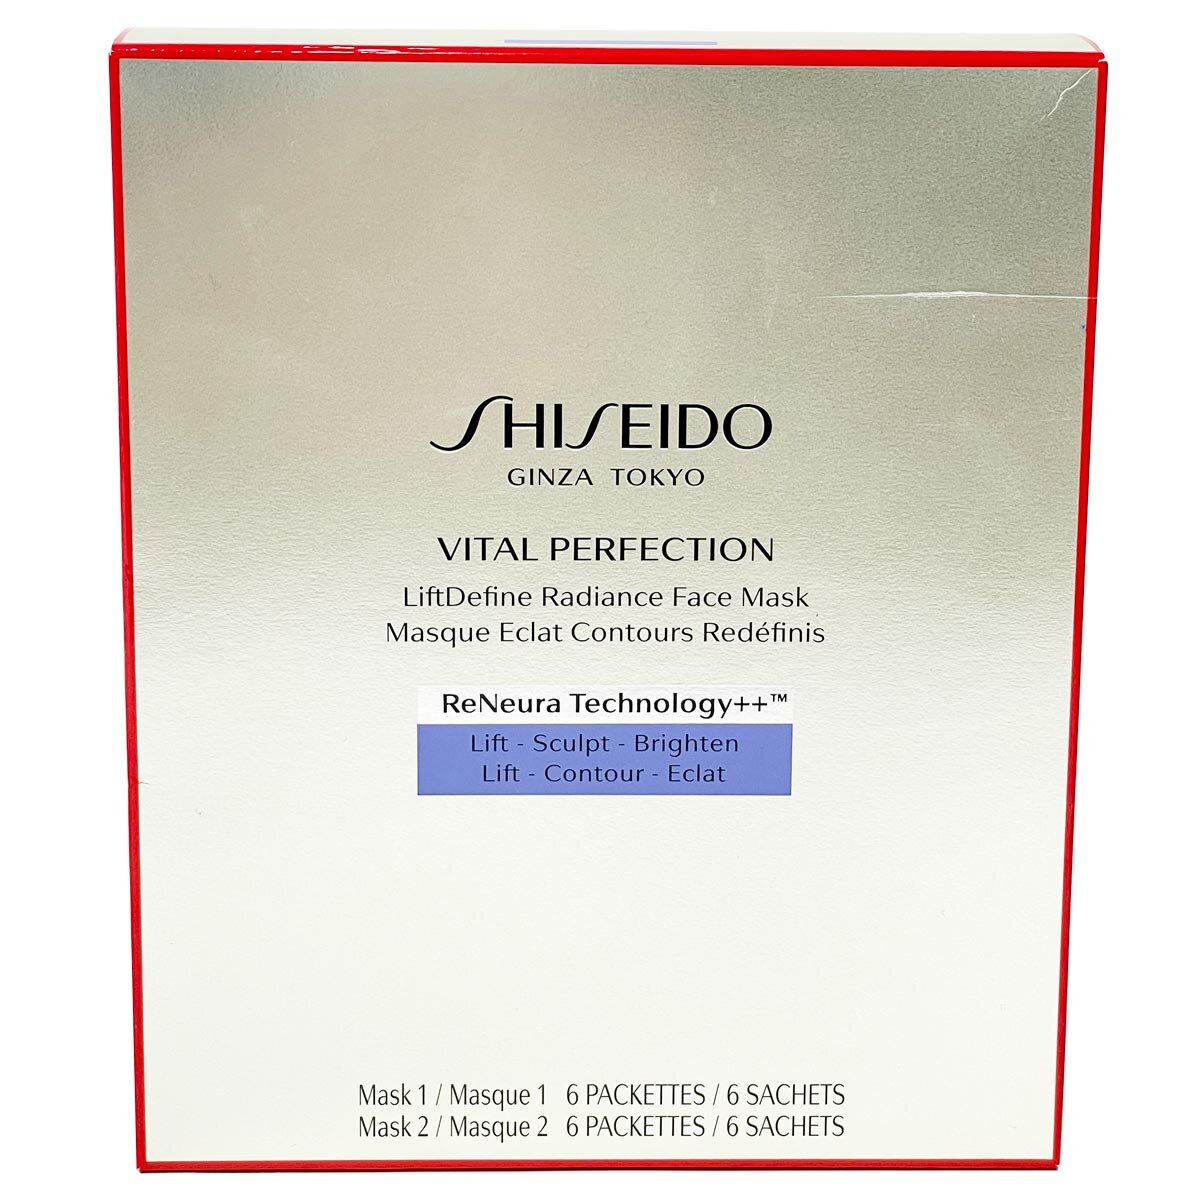 Shiseido Vital Perfection Uplifting LiftDefine Radiance Face Mask, 6 Pack